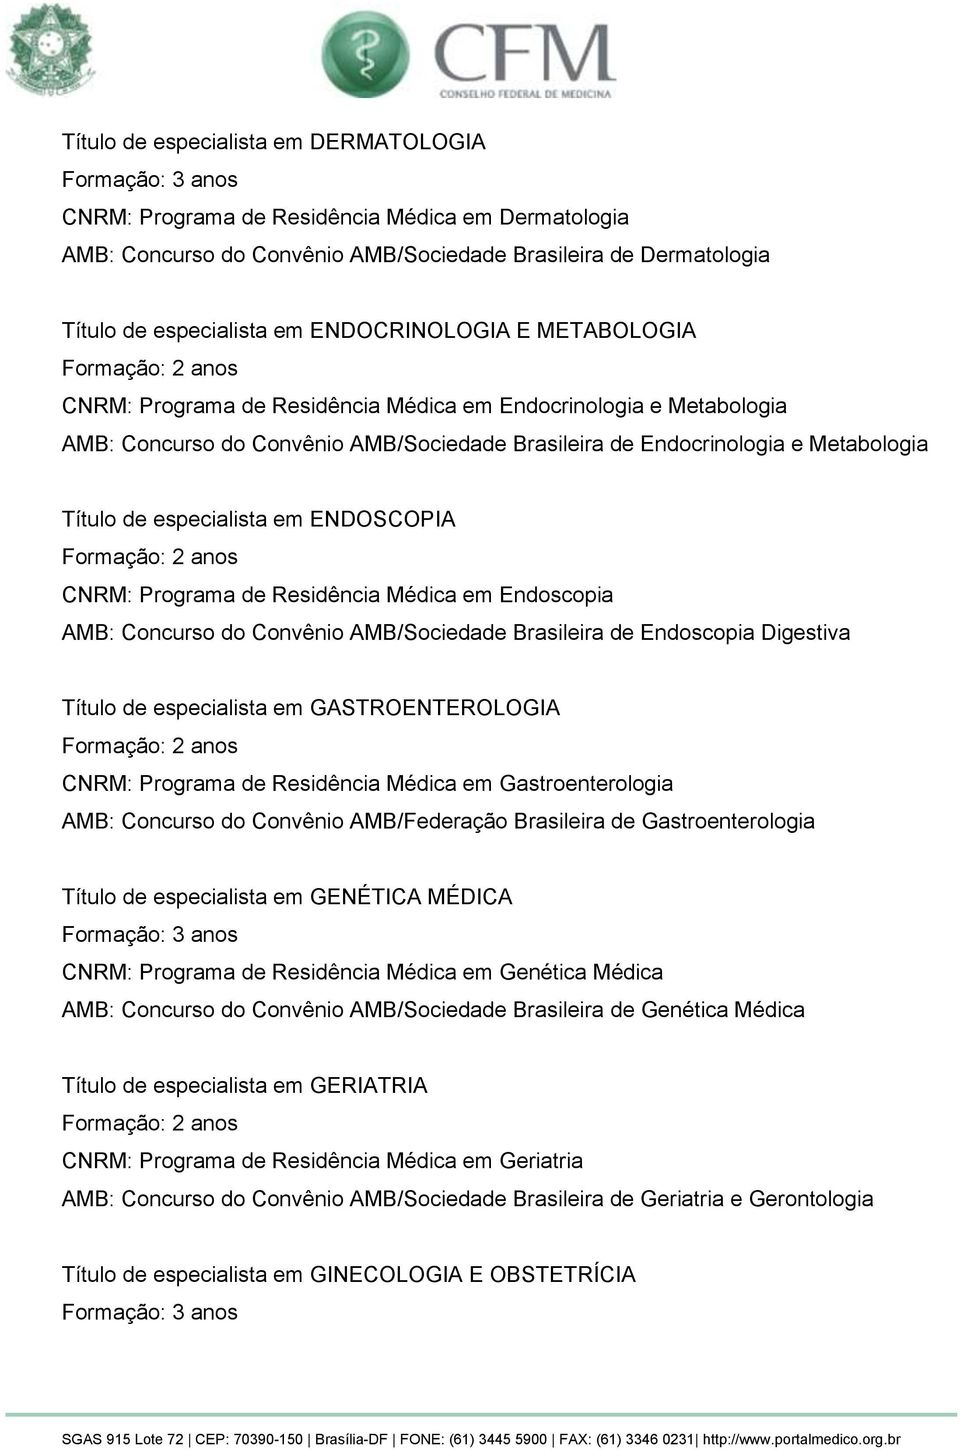 ENDOSCOPIA CNRM: Programa de Residência Médica em Endoscopia AMB: Concurso do Convênio AMB/Sociedade Brasileira de Endoscopia Digestiva Título de especialista em GASTROENTEROLOGIA CNRM: Programa de